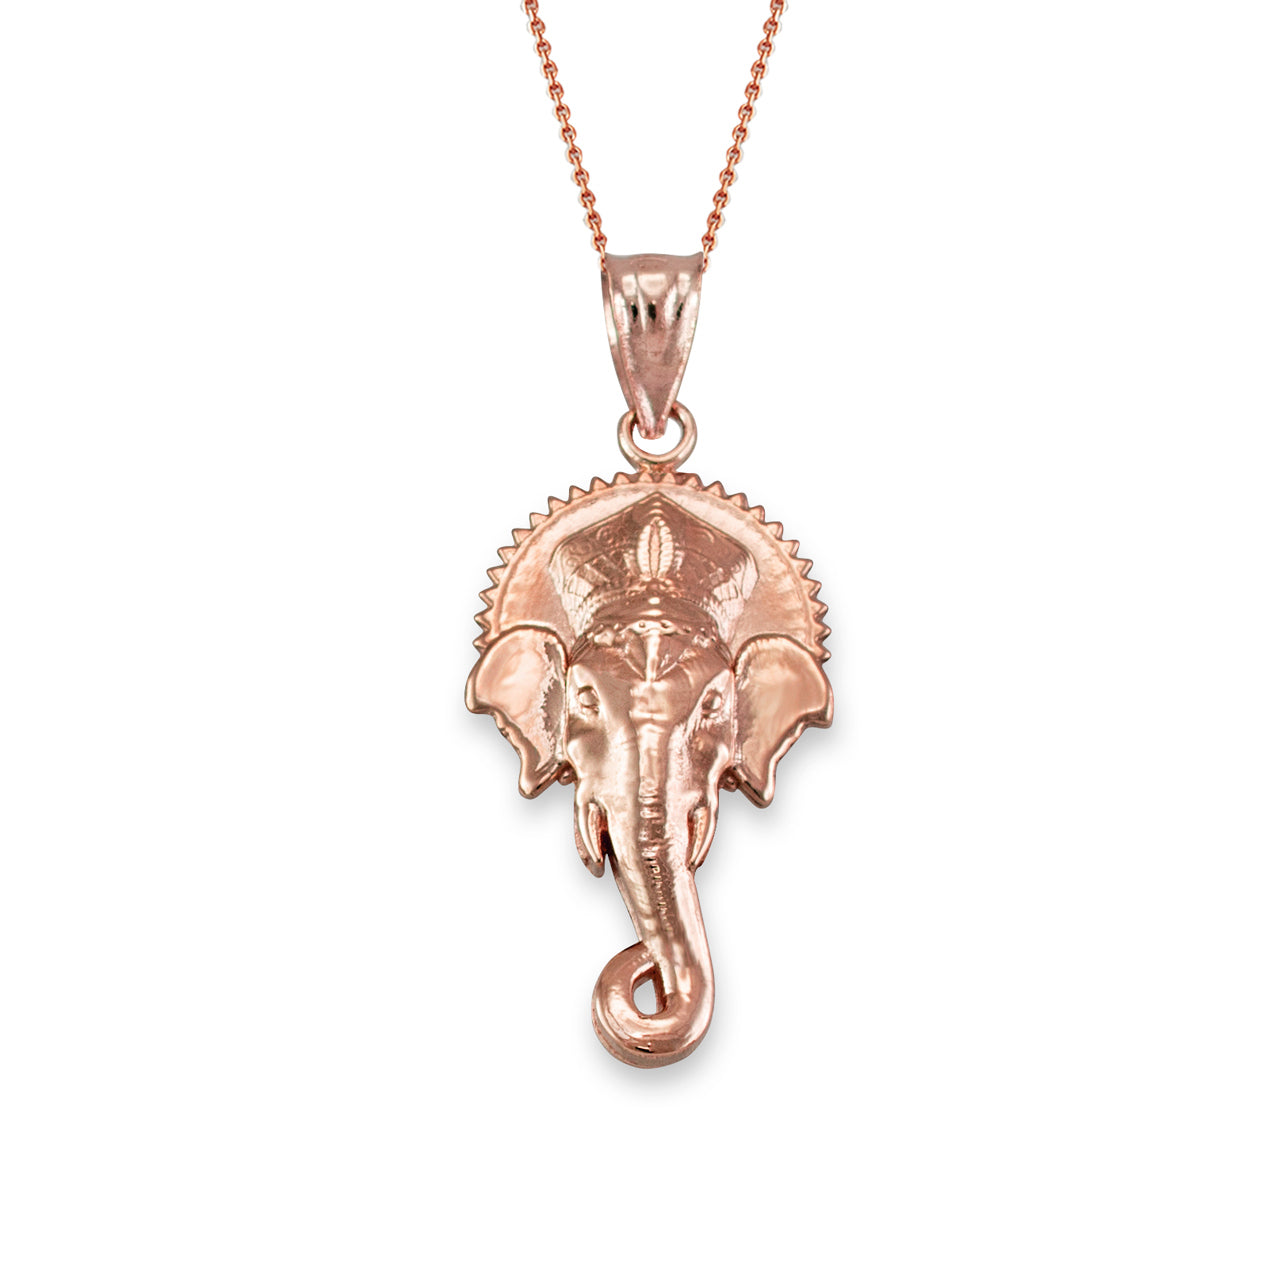 Solid Gold Hindu Elephant God Ganesha Pendant Necklace(10k, 14k, yellow, white, rose gold) Karma Blingz